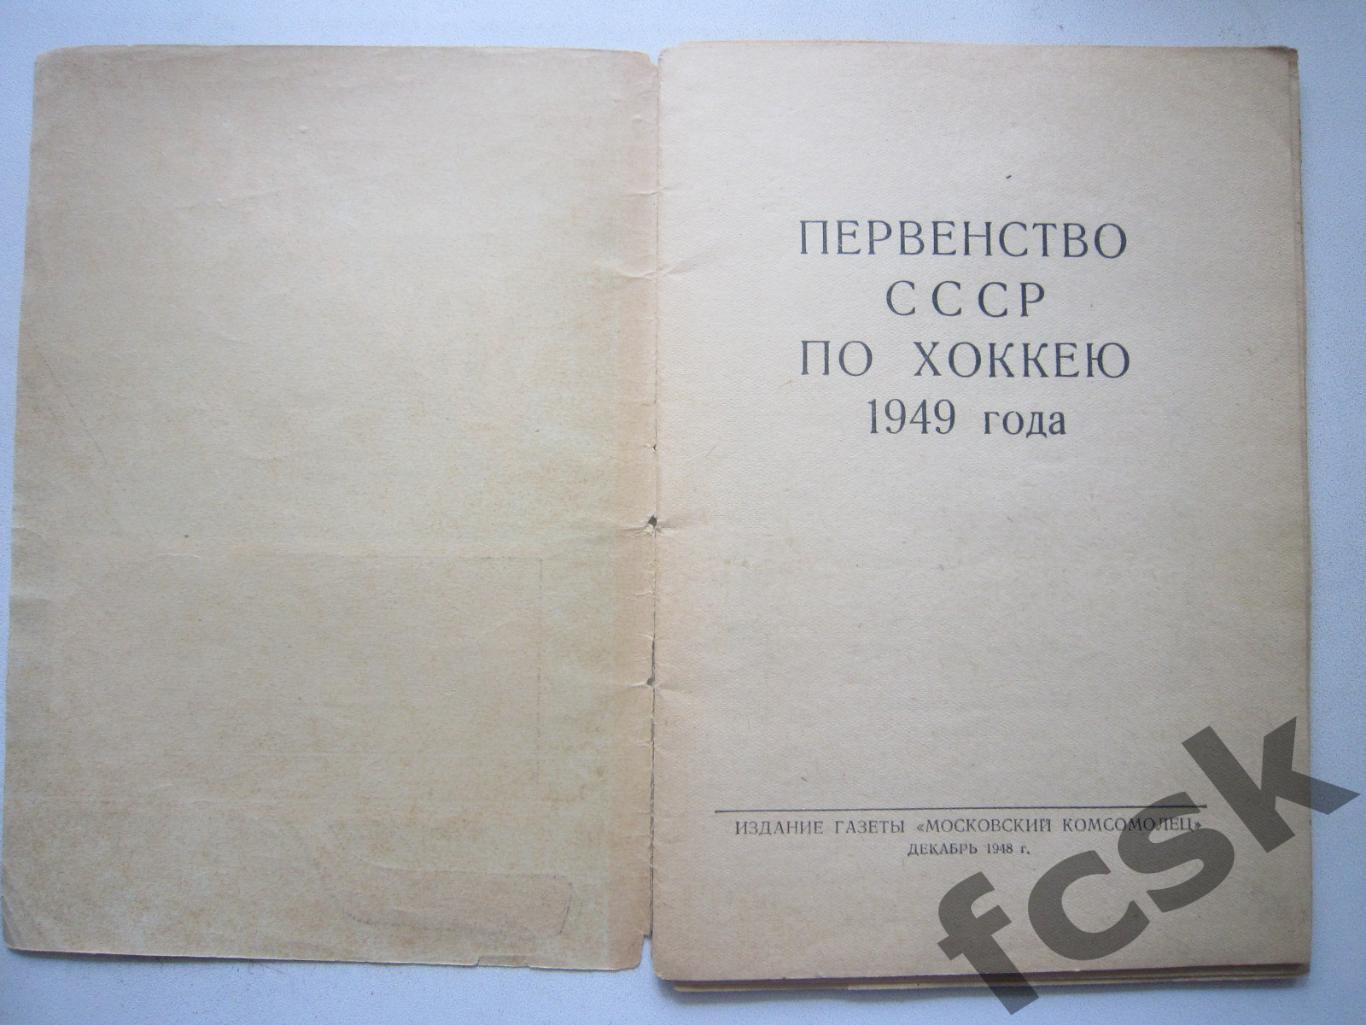 Хоккей 1949 Первенство СССР Московский комсомолец (*) 1